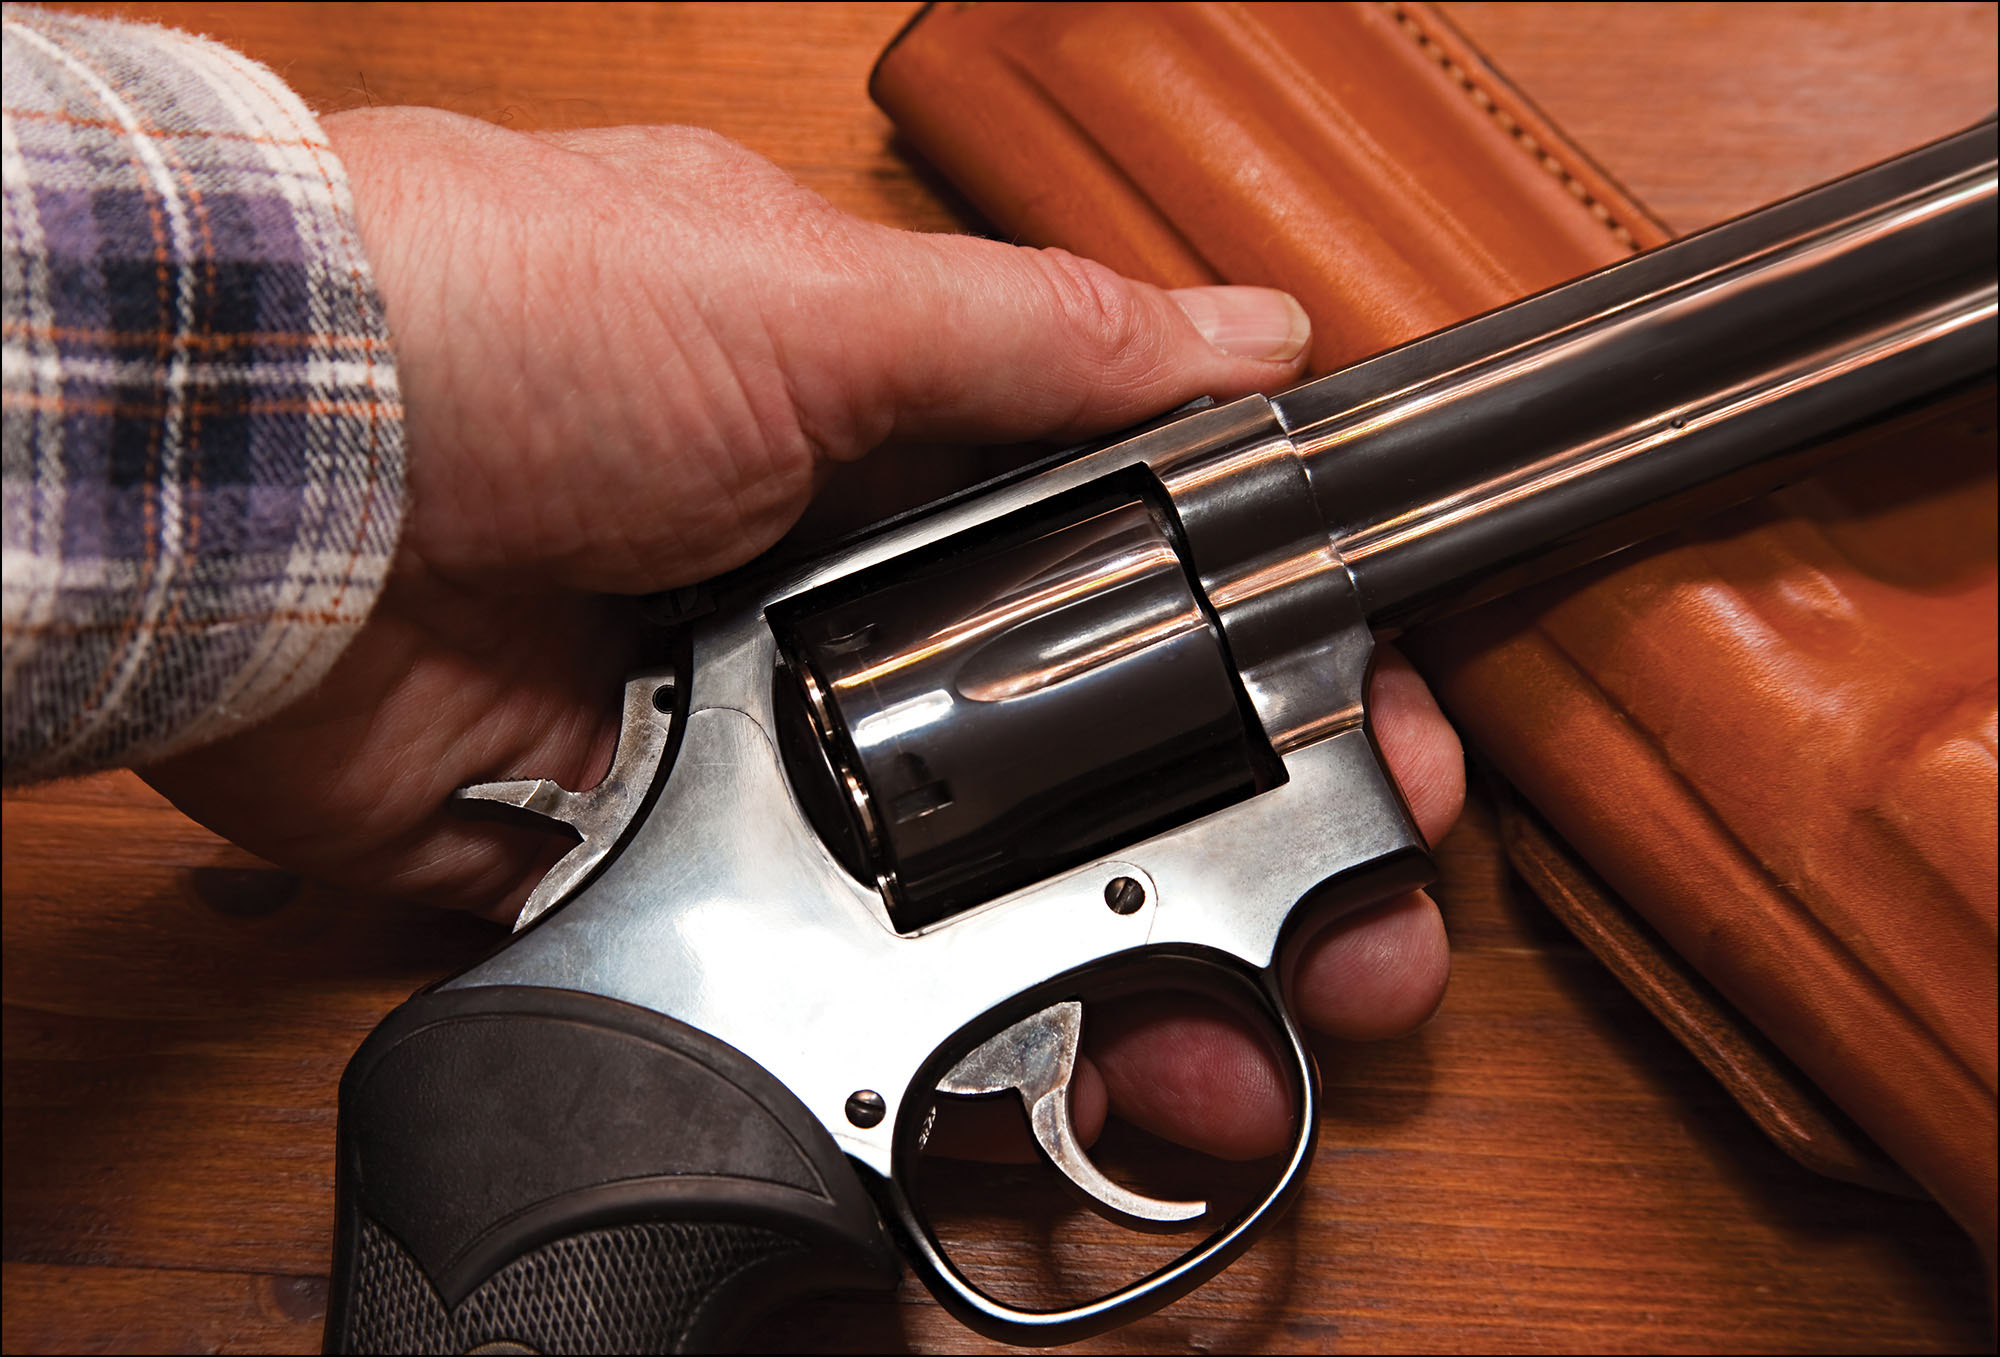 Close-up photo of a handgun